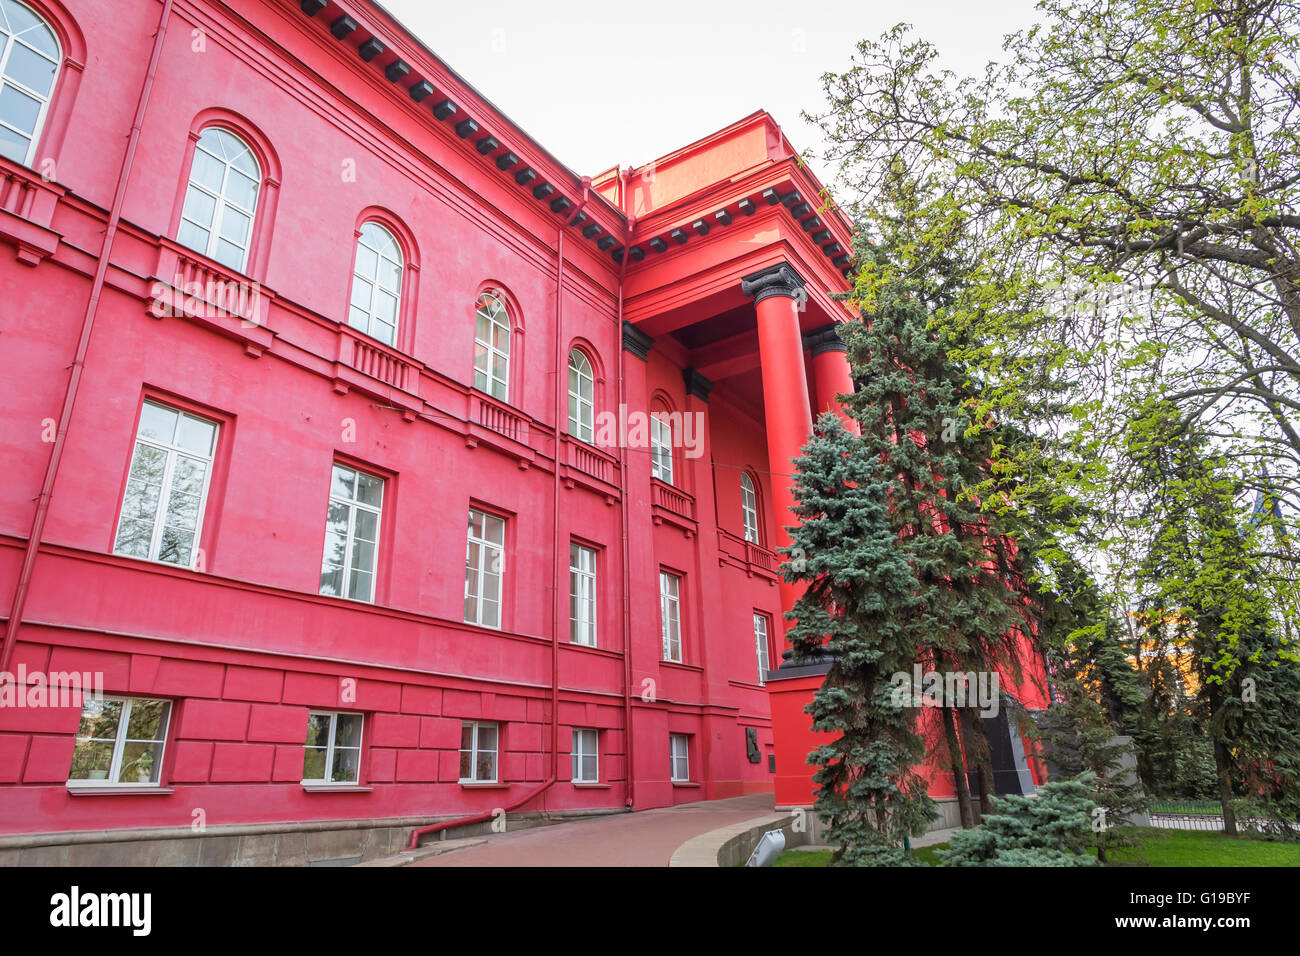 Taras Shevchenko nationale Universität Kiew, Ukraine. Die dritte älteste Universität in der Ukraine, wurde 1834 gegründet Stockfoto